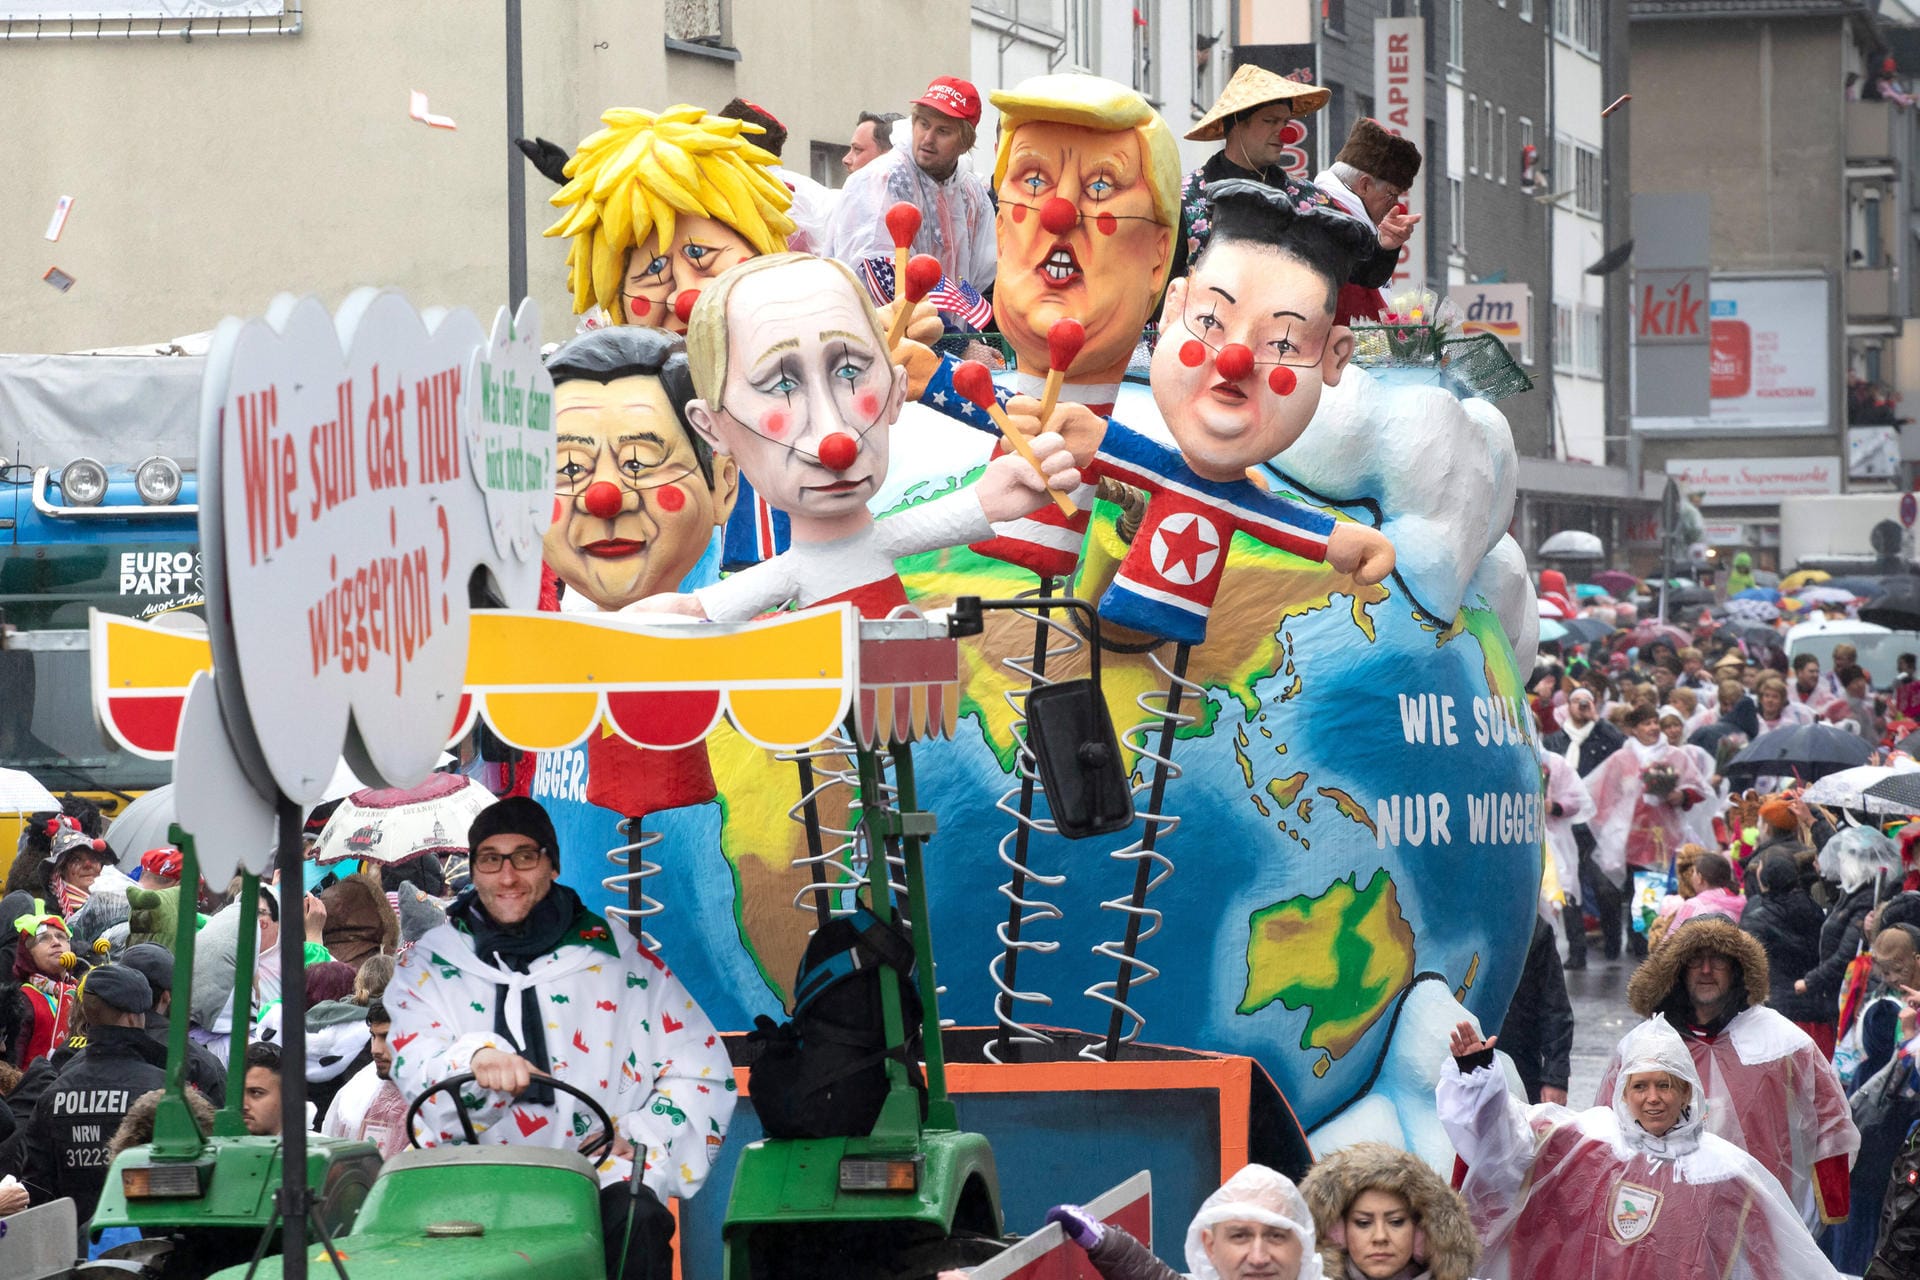 Ein Motivwagen zeigt Donald Trump als Brandstifter sowie Boris Johnson, Wladimir Putin, Xi Jinping und Kim Jong-un.